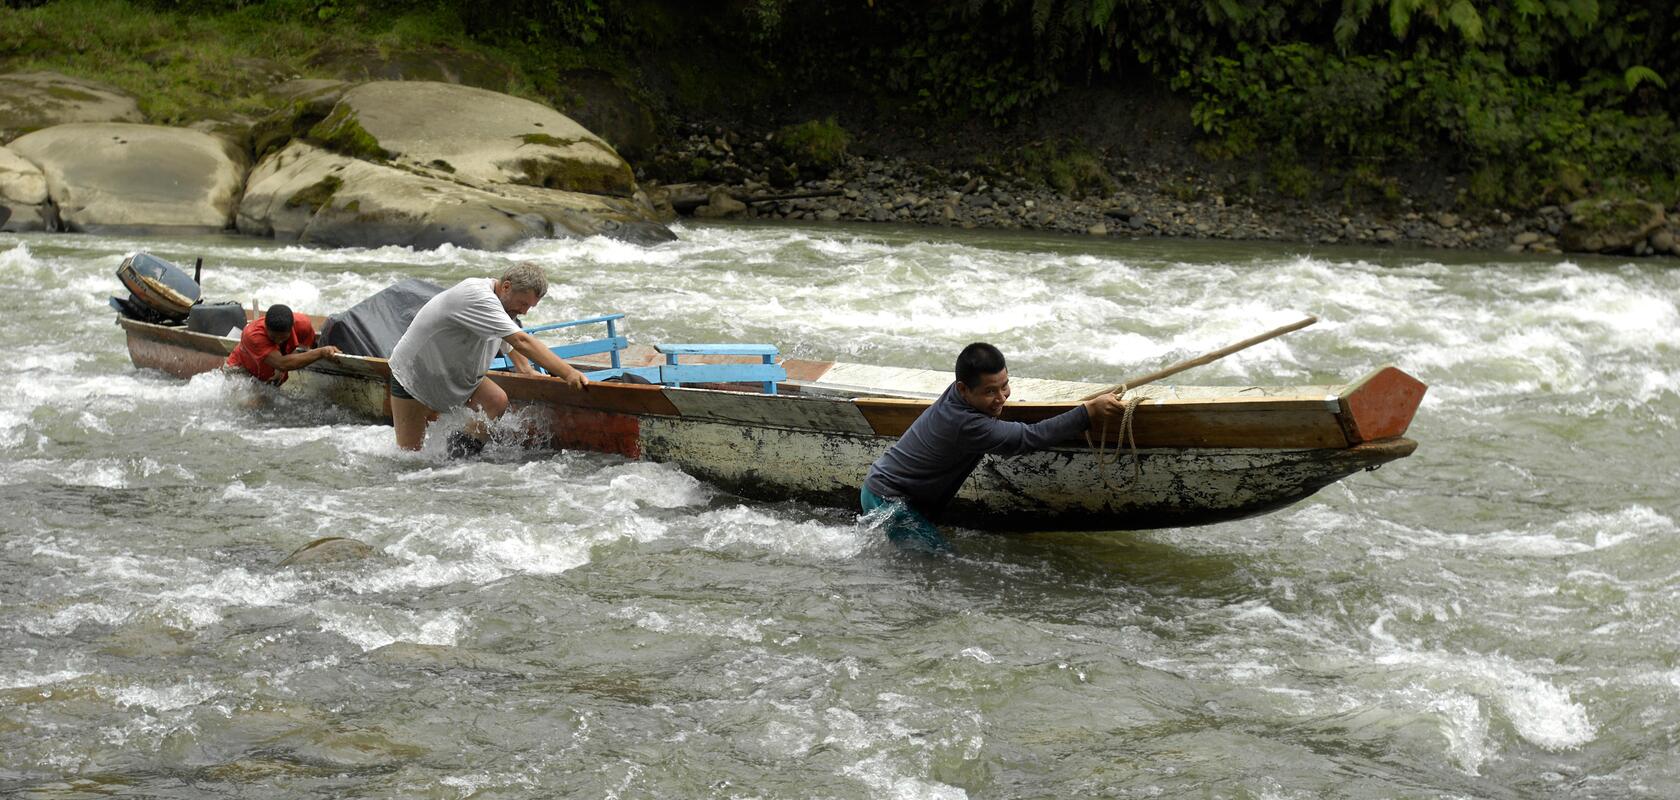 Drei Männer stossen ein Boot über eine Stromschnelle. Das Bild steht symbolisch  für den Weg zum Einsatz, den neue Fachleute von Comundo begehen.